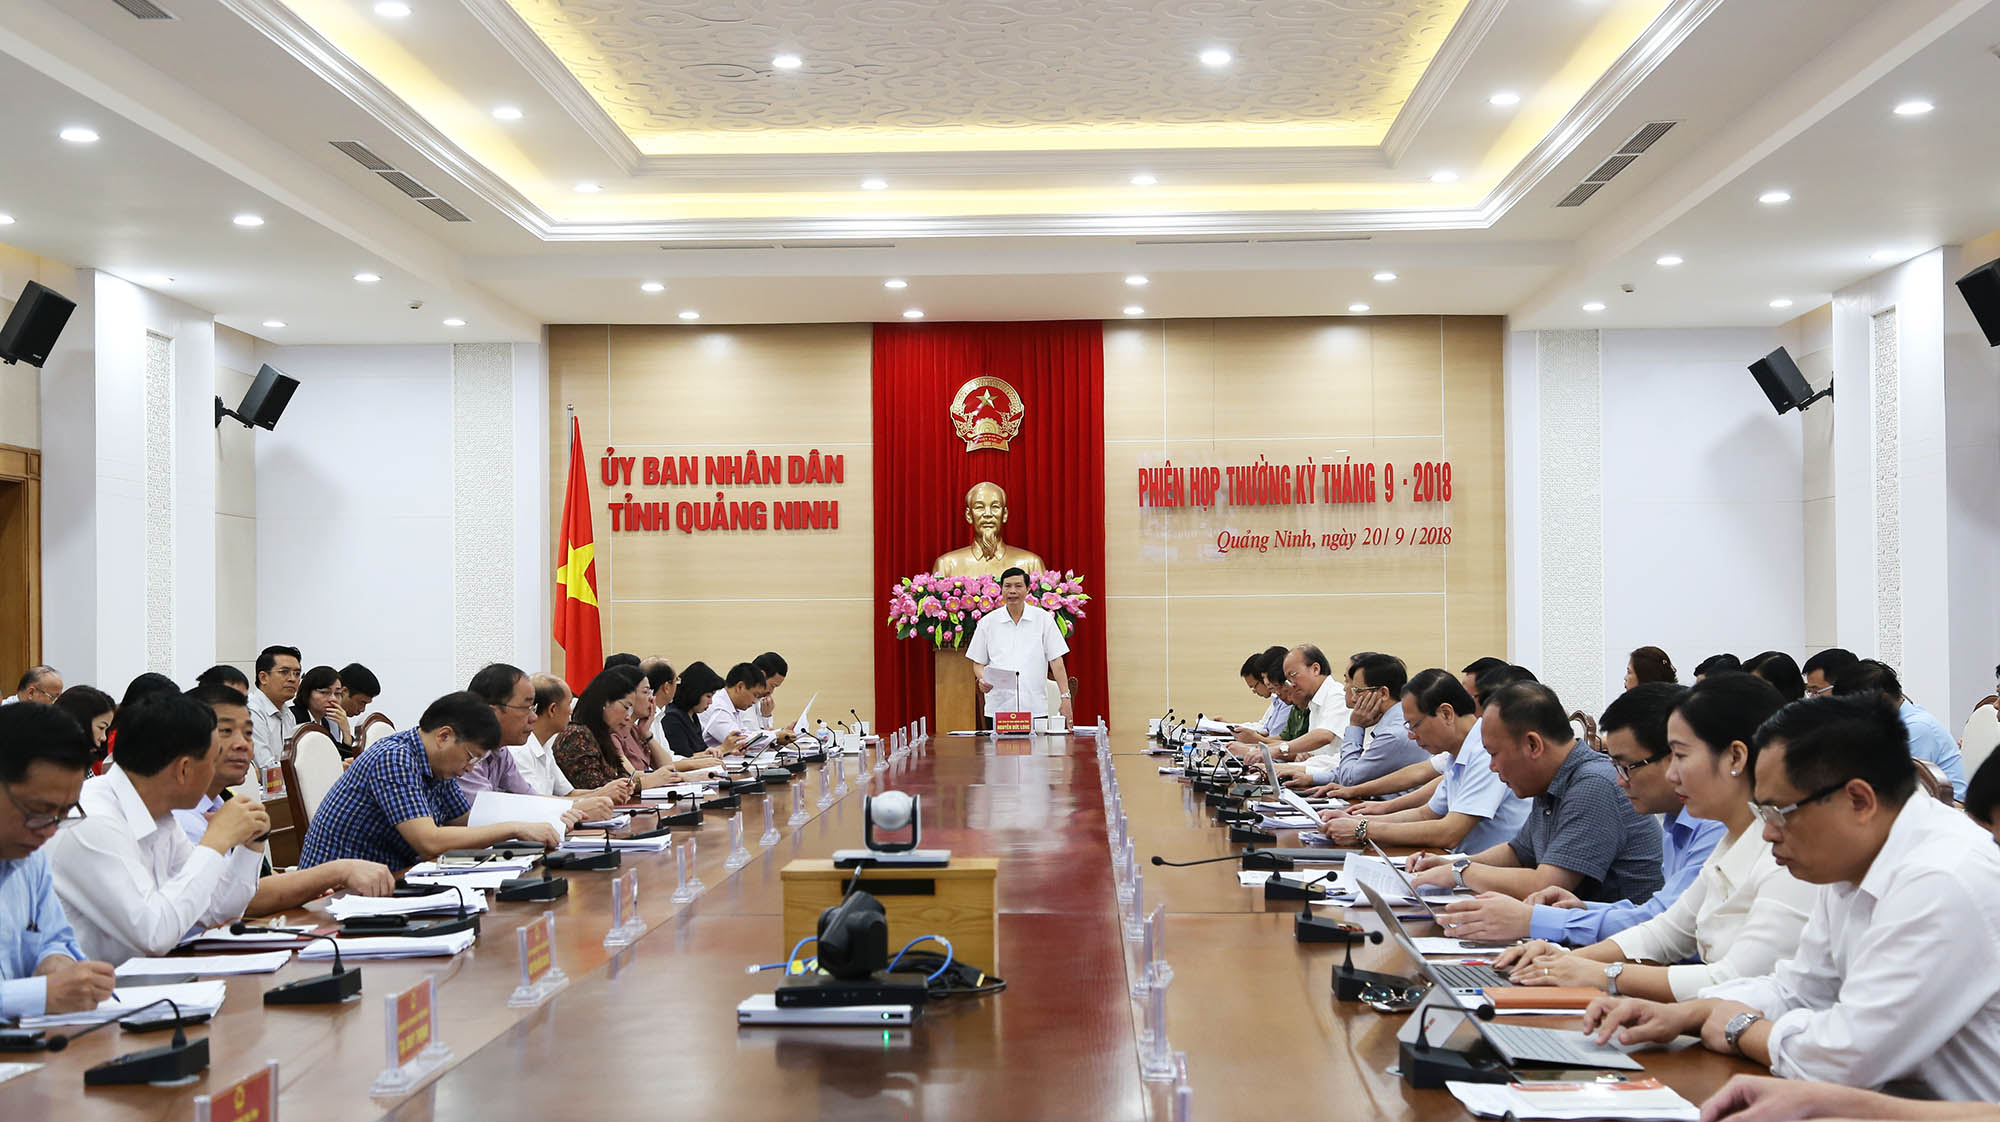 Đồng chí Nguyễn Đức Long, Phó Bí thư Tinh ủy, Chủ tịch UBND tỉnh, chủ trì phiên họp.